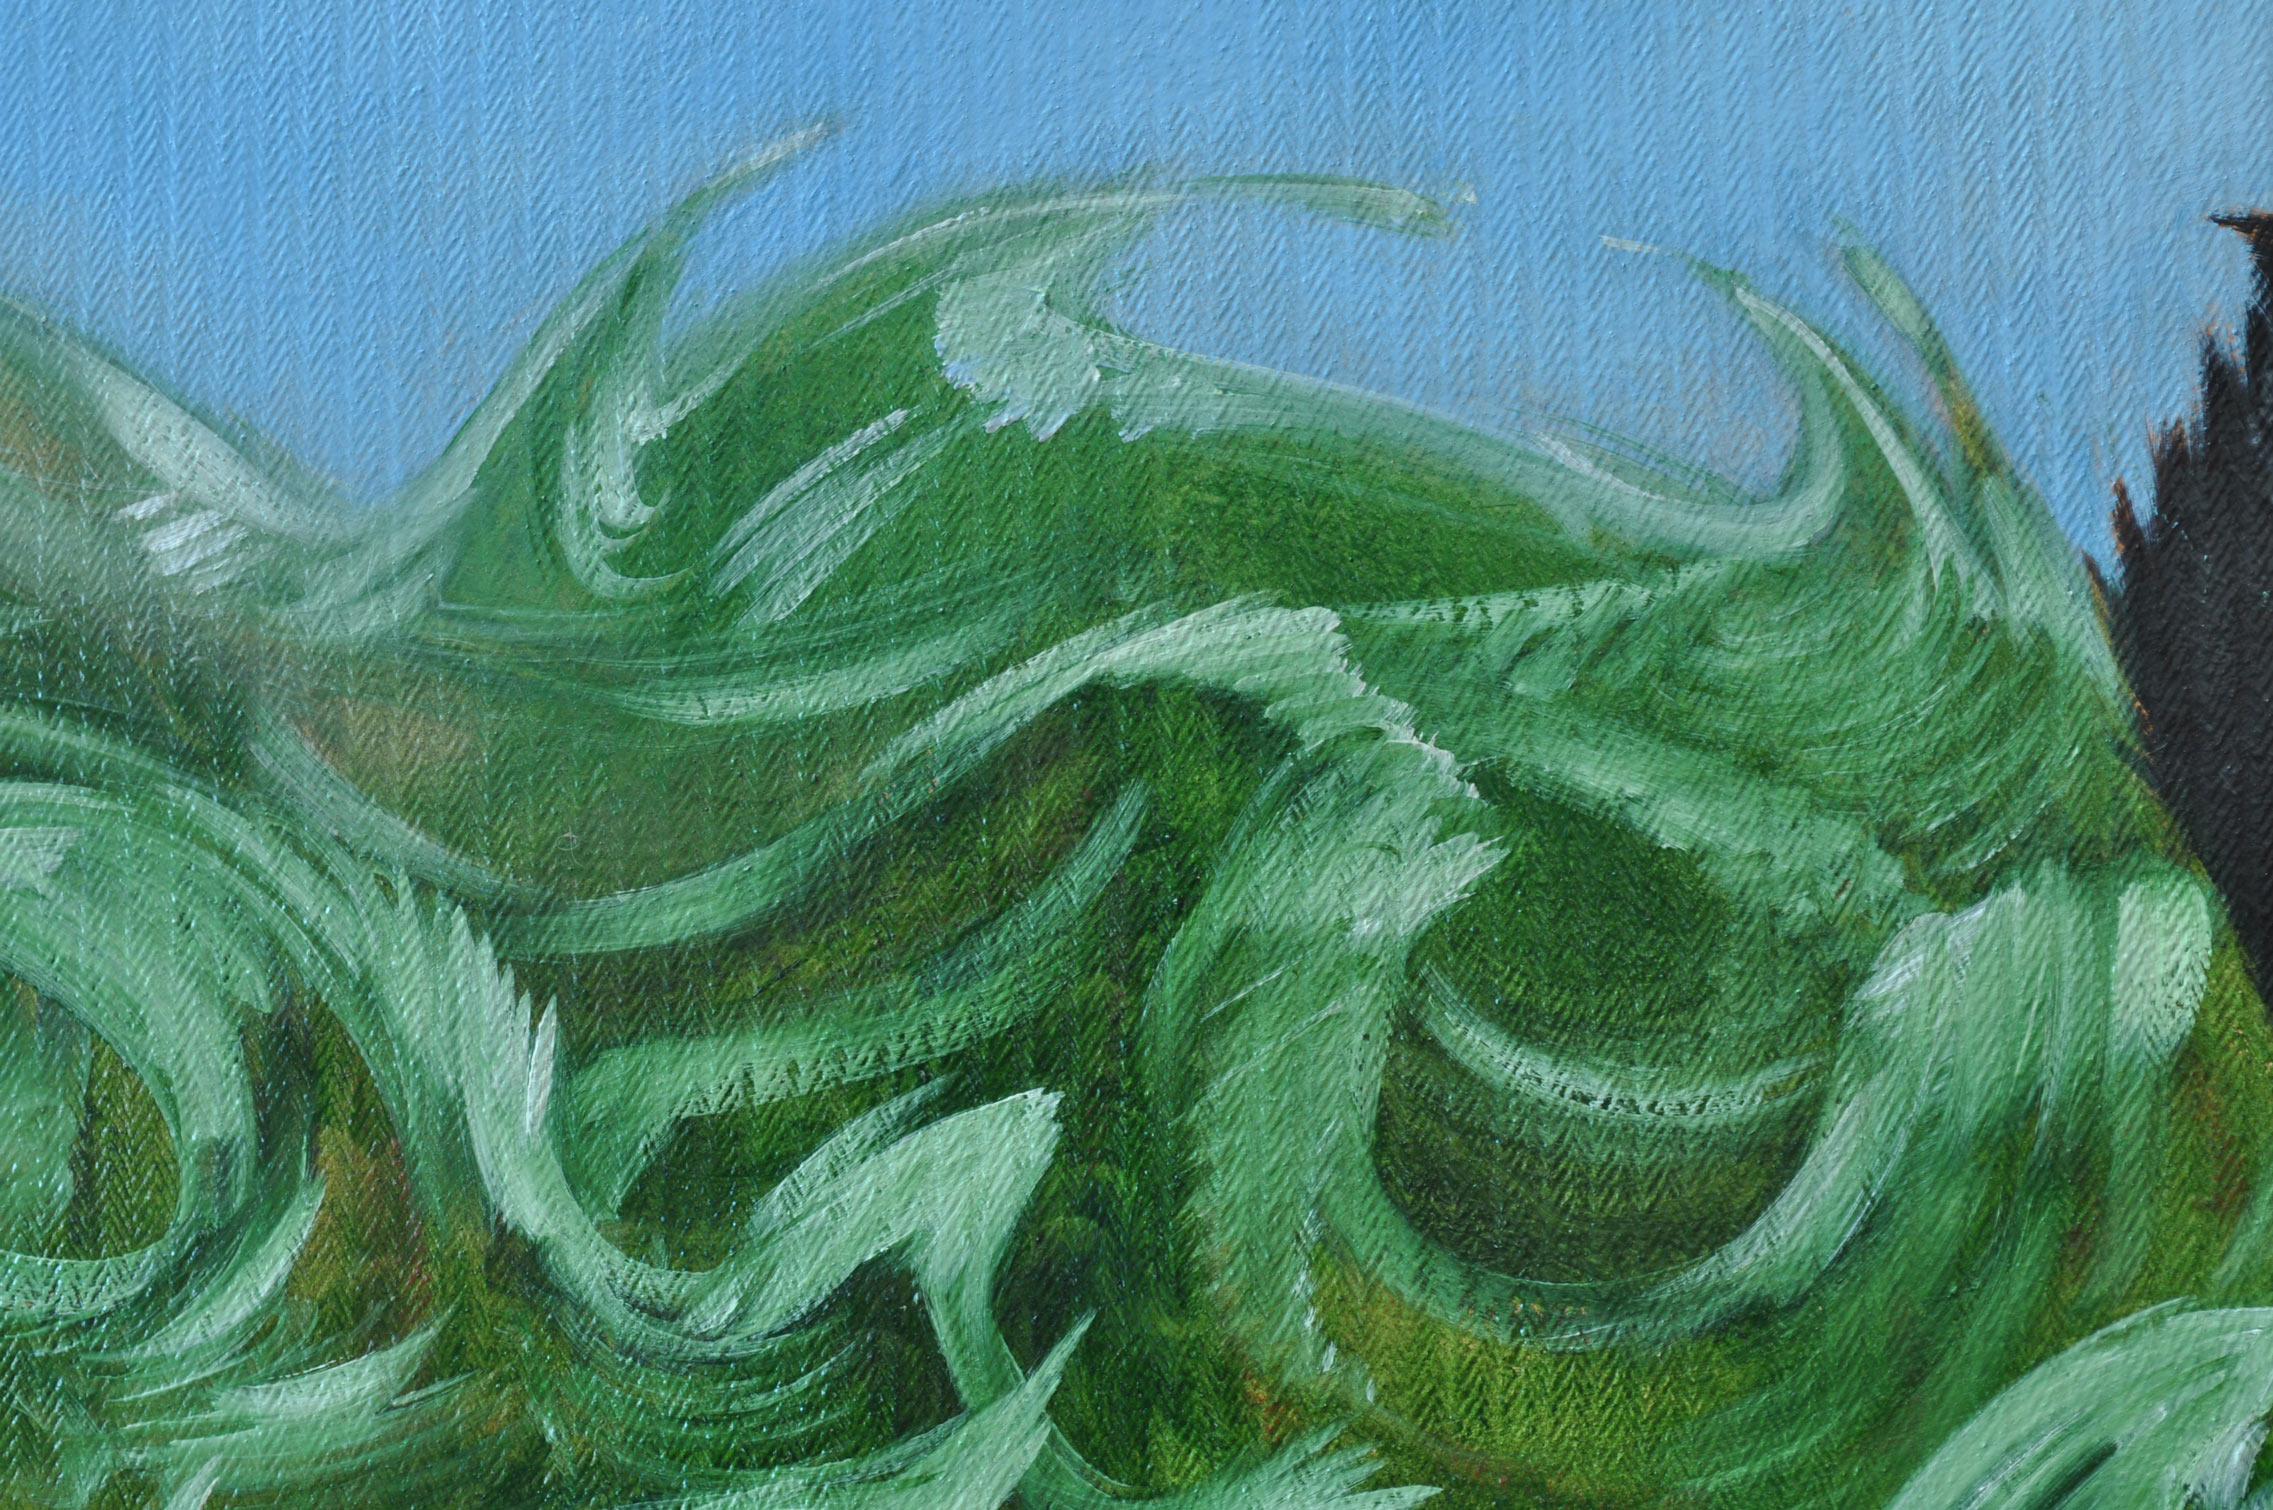 Détails des vagues, des gestes arrondis de blanc tiré dans un jus de vert ocre. Les vagues sont toutes différentes et se raccordent plus ou moins entre elles, à leur racines.